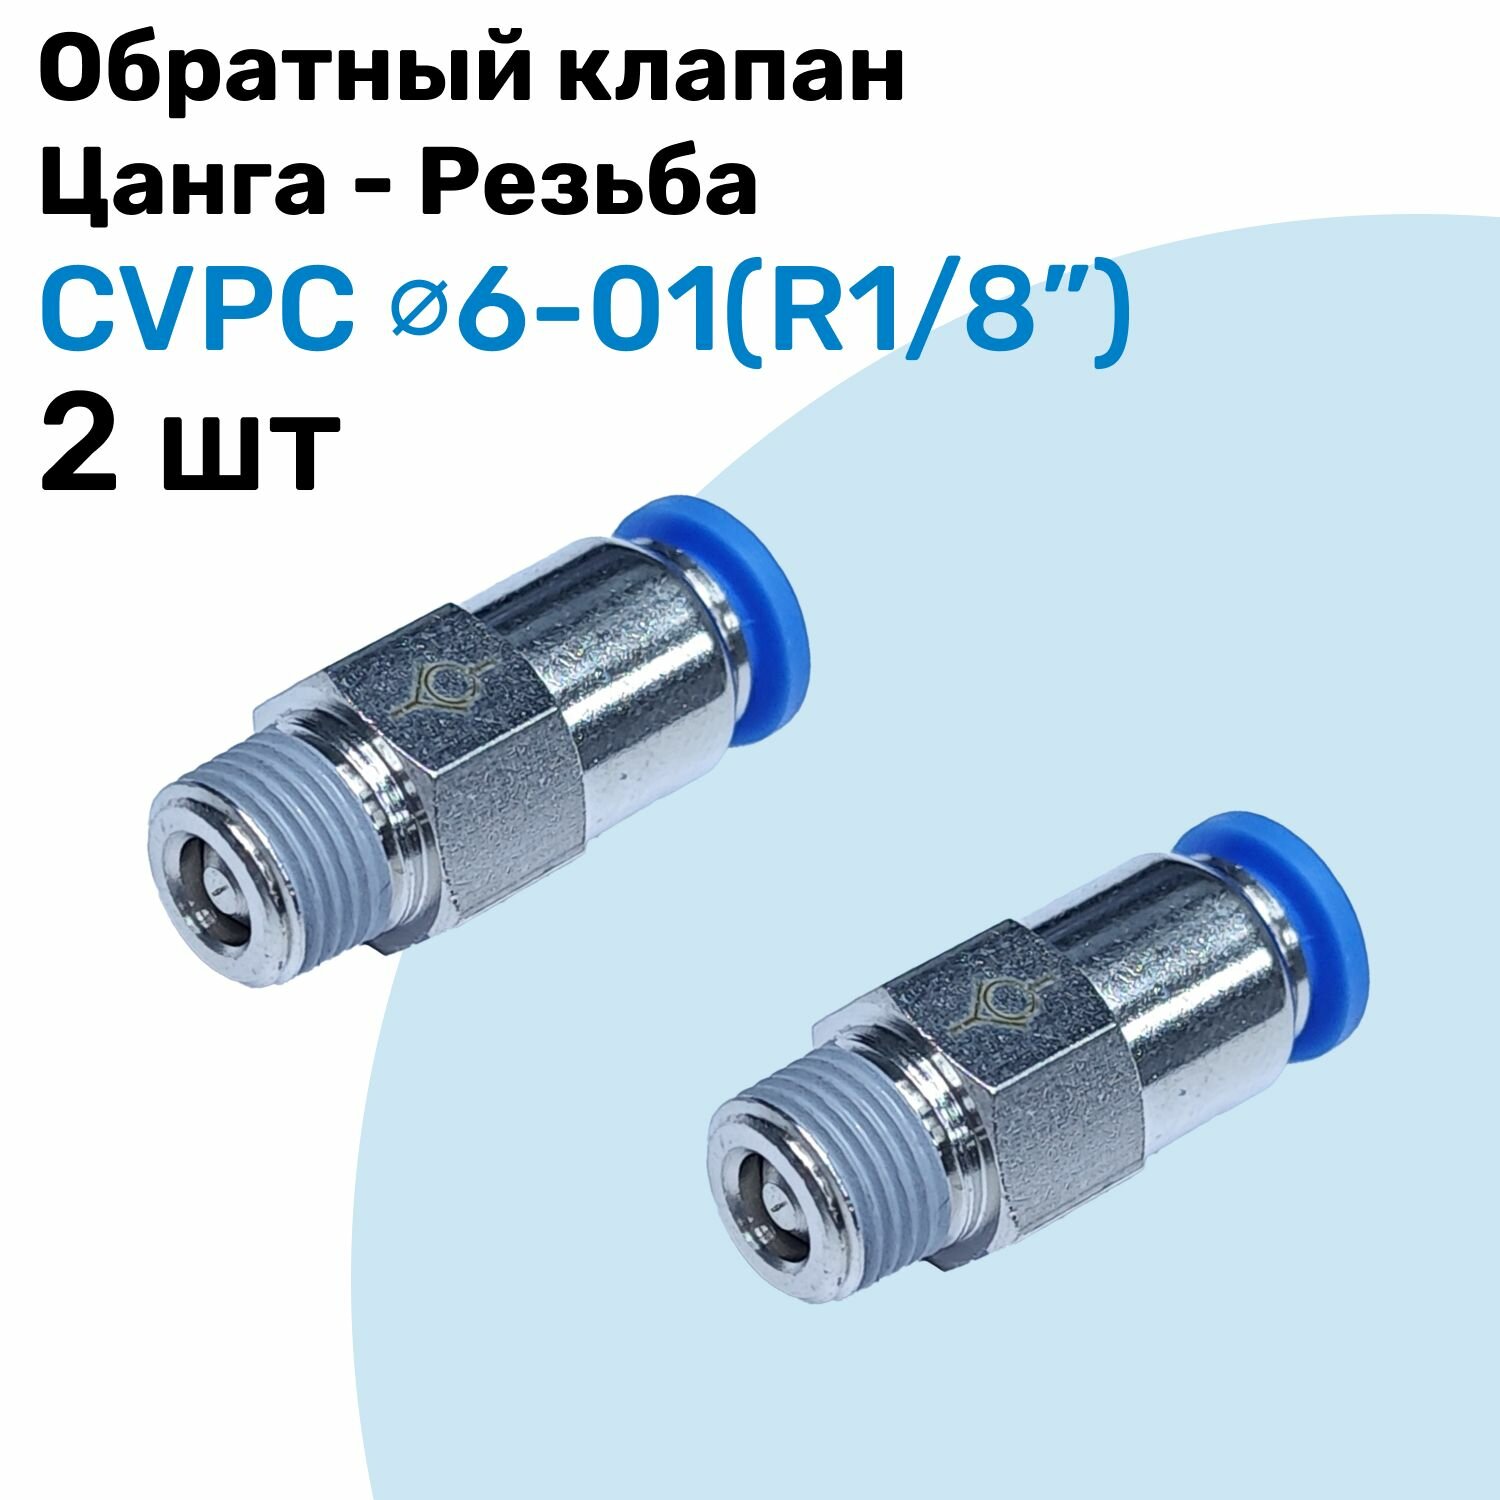 Обратный клапан латунный CVPC 6-01, 6мм - R1/8", Цанга - Внешняя резьба, Пневматический клапан NBPT, Набор 2шт